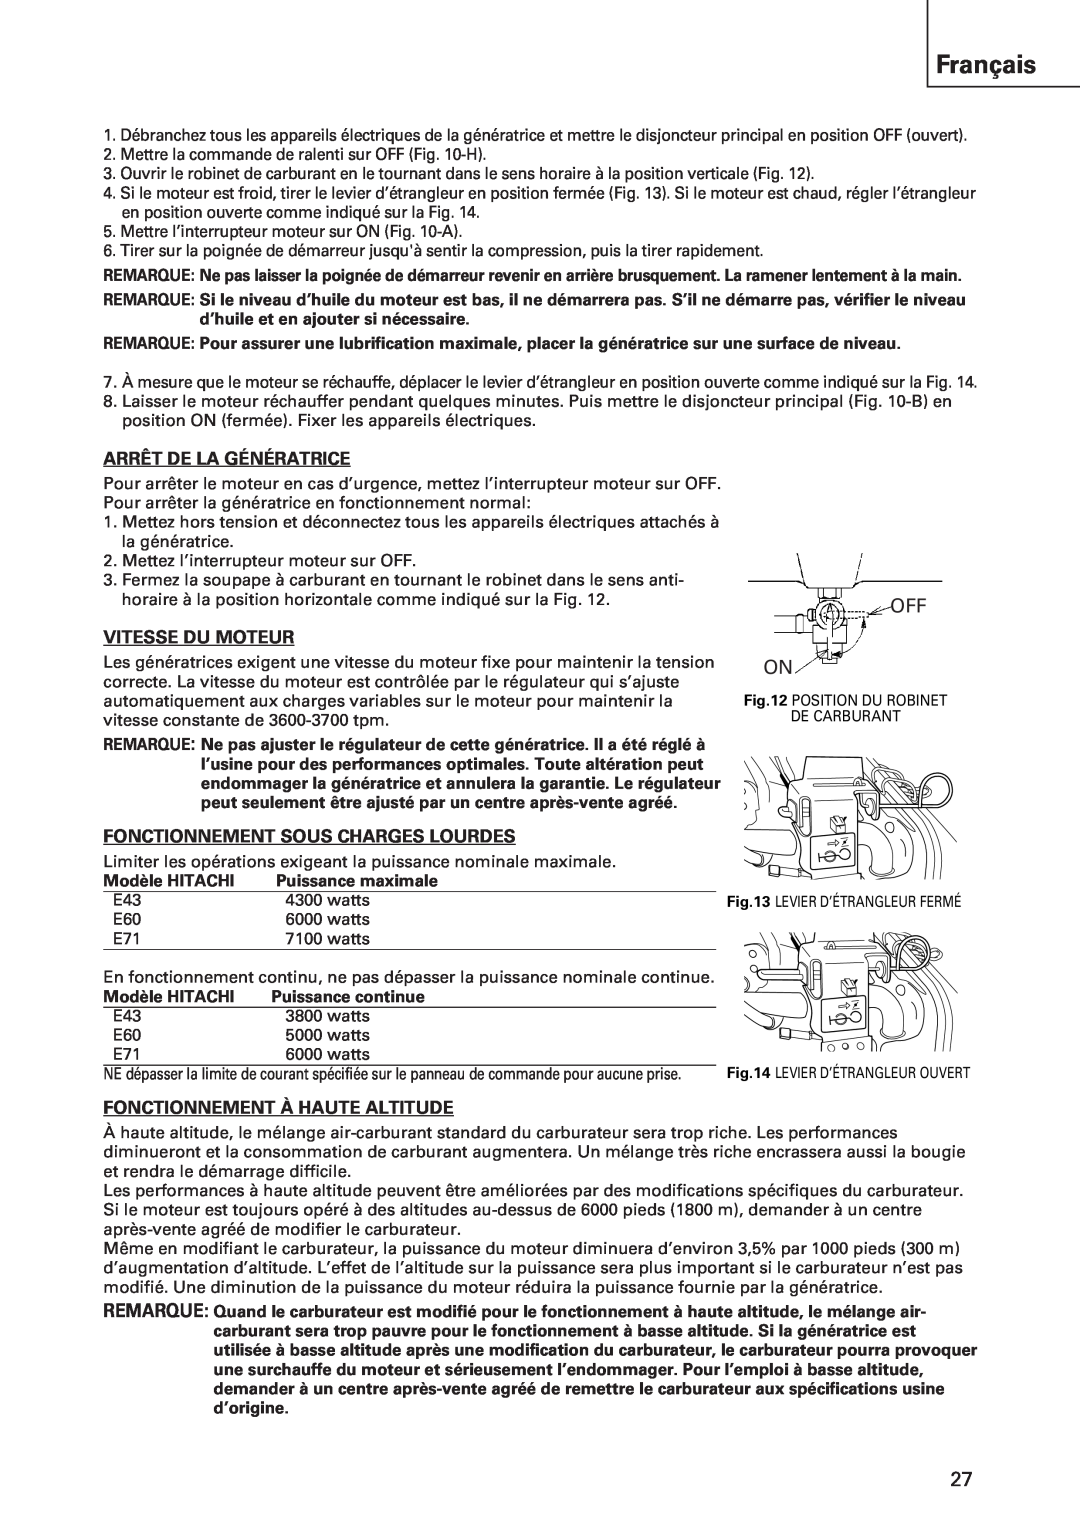 Hitachi E43 instruction manual Français, Arrêt De La Génératrice, Vitesse Du Moteur, Fonctionnement Sous Charges Lourdes 